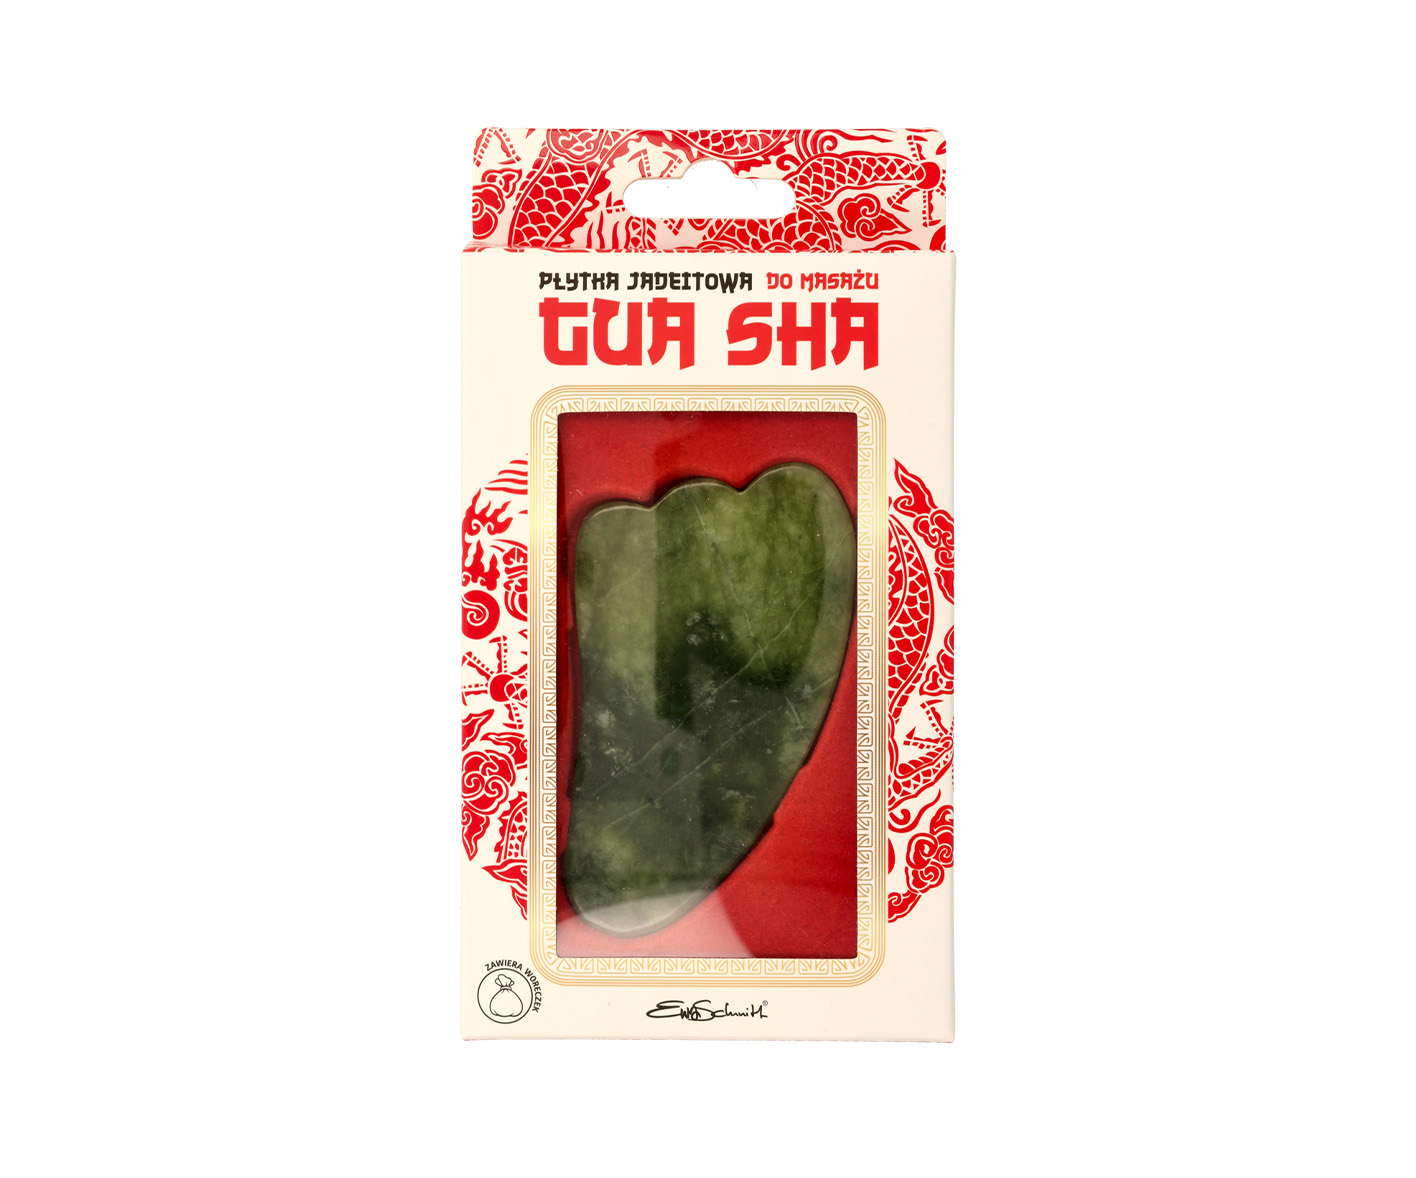 EWA SCHMITT, Gua Sha sten gjord av grön jade